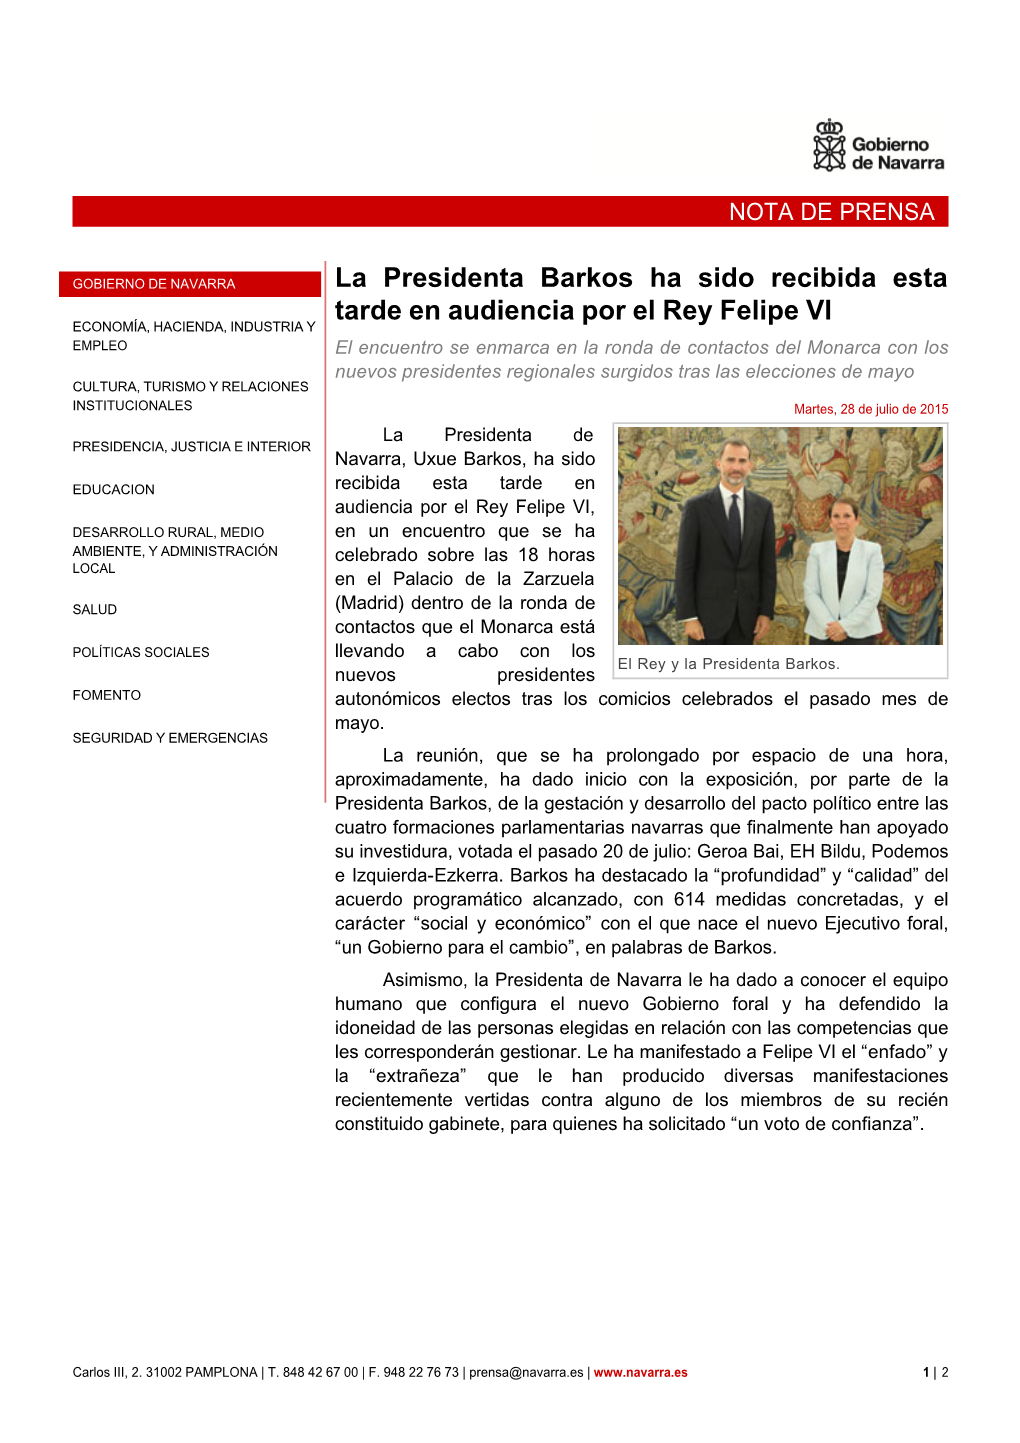 La Presidenta Barkos Ha Sido Recibida Esta Tarde En Audiencia Por El Rey Felipe VI